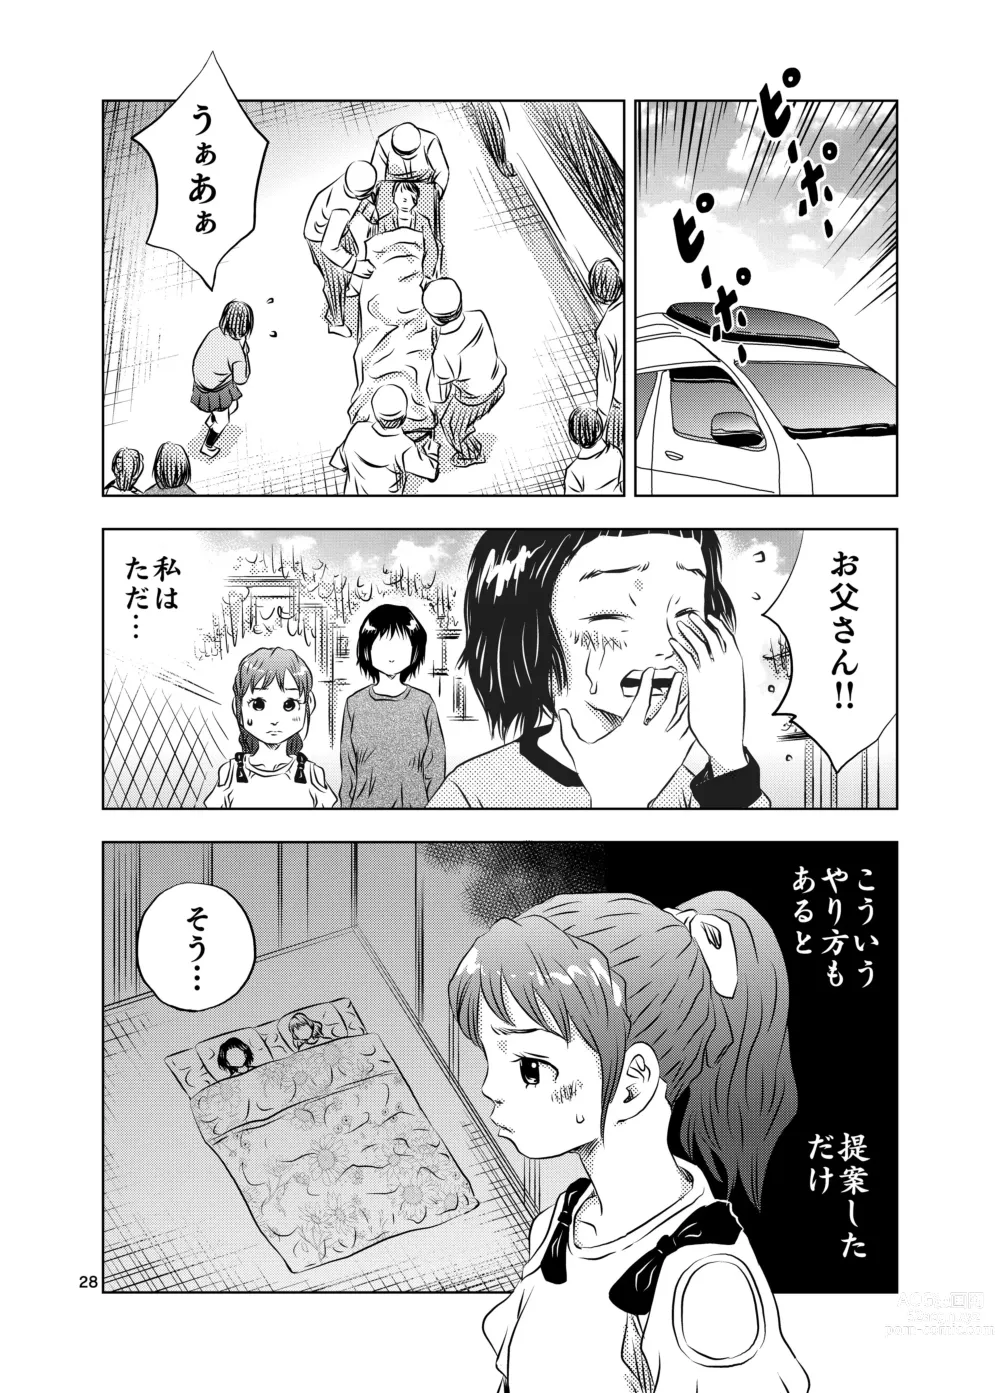 Page 28 of doujinshi Itoko no Aoi-chan